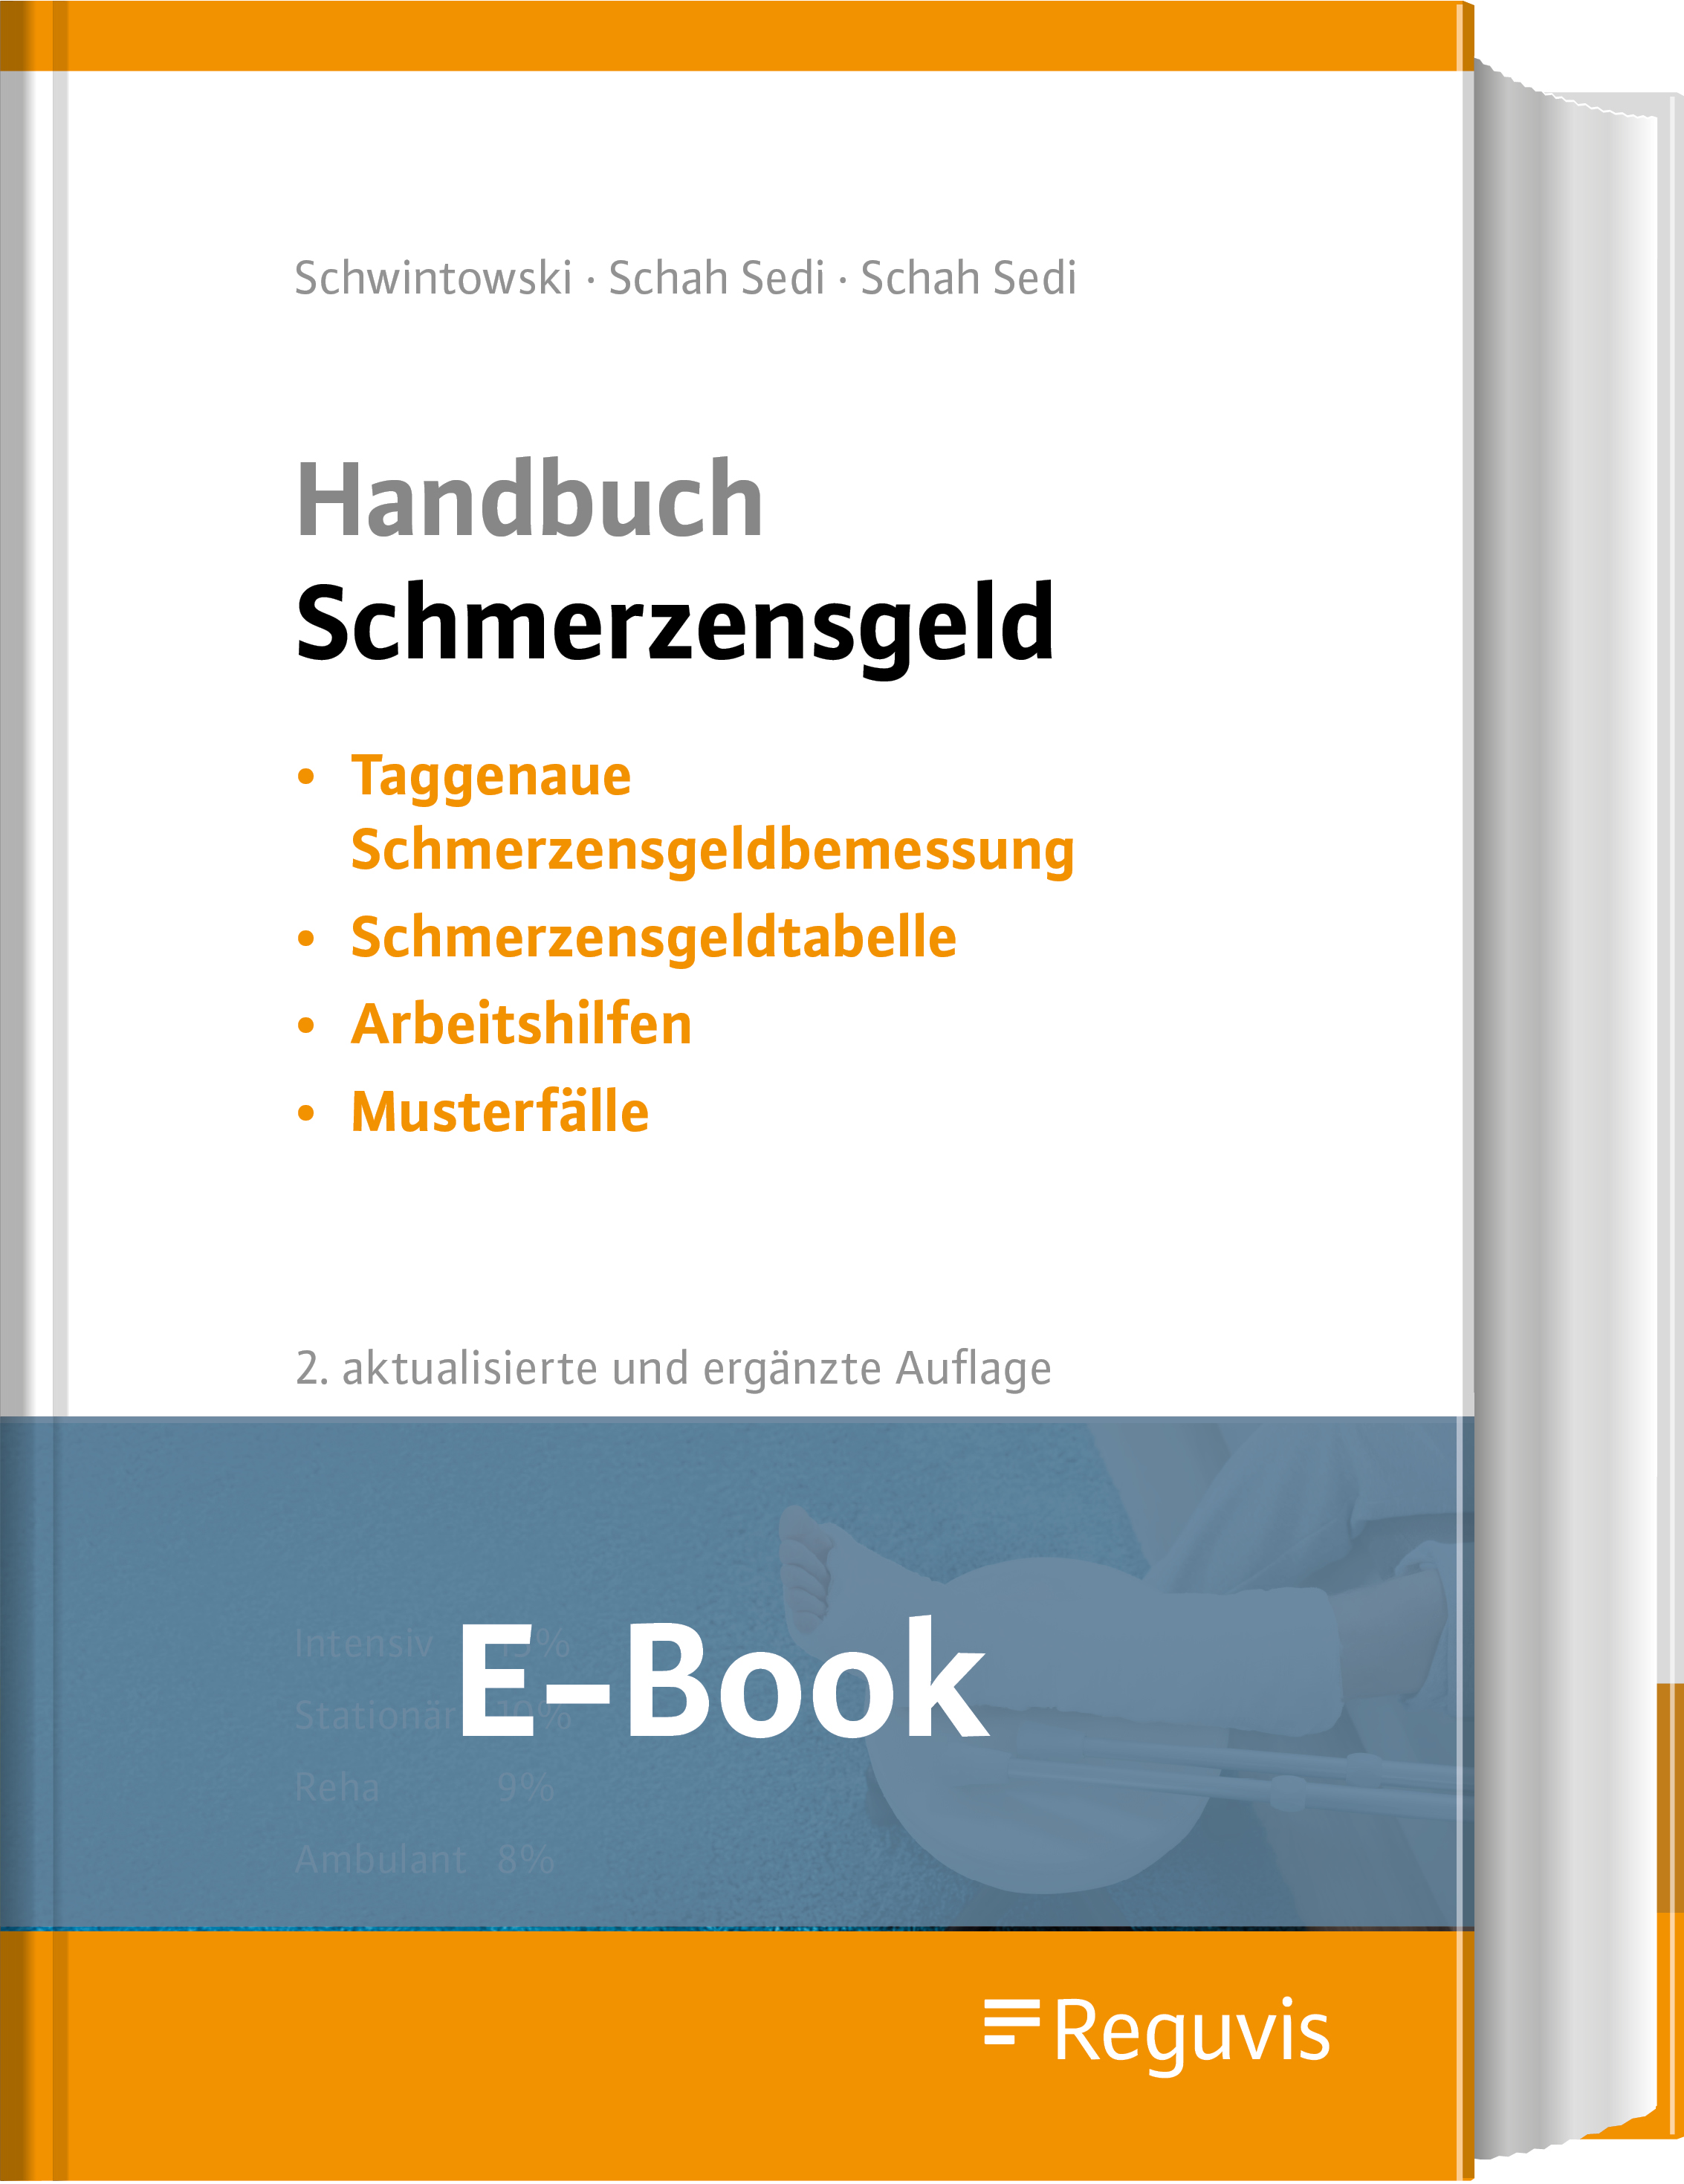 Handbuch Schmerzensgeld (E-Book)